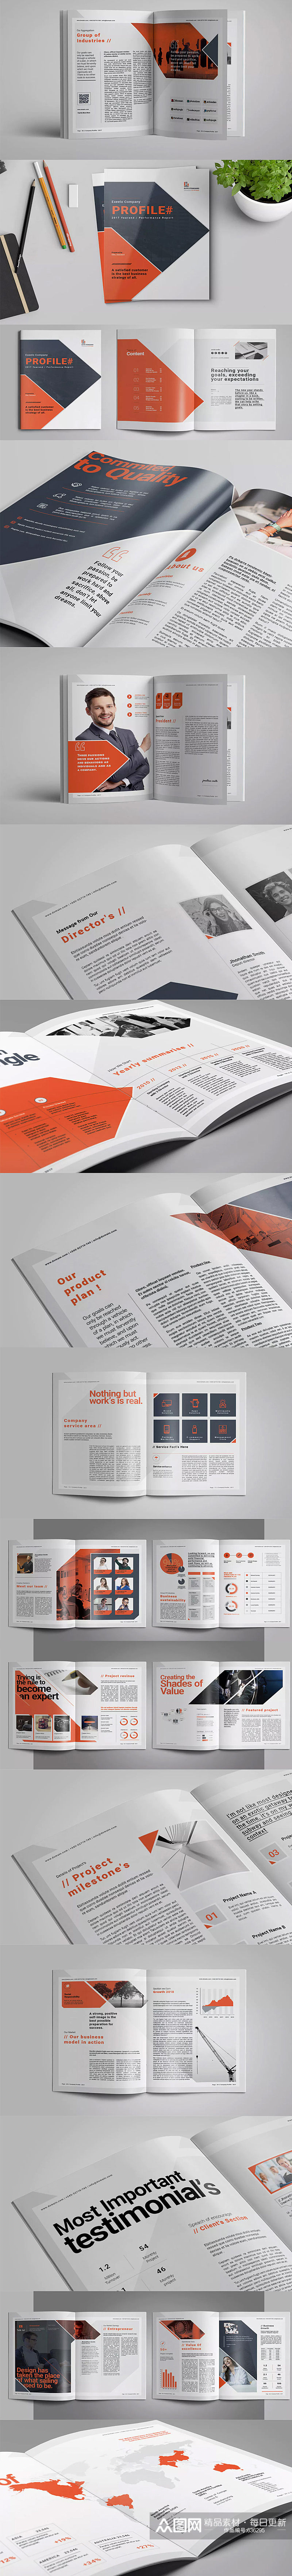 橙色大气画册设计 书籍目录设计素材